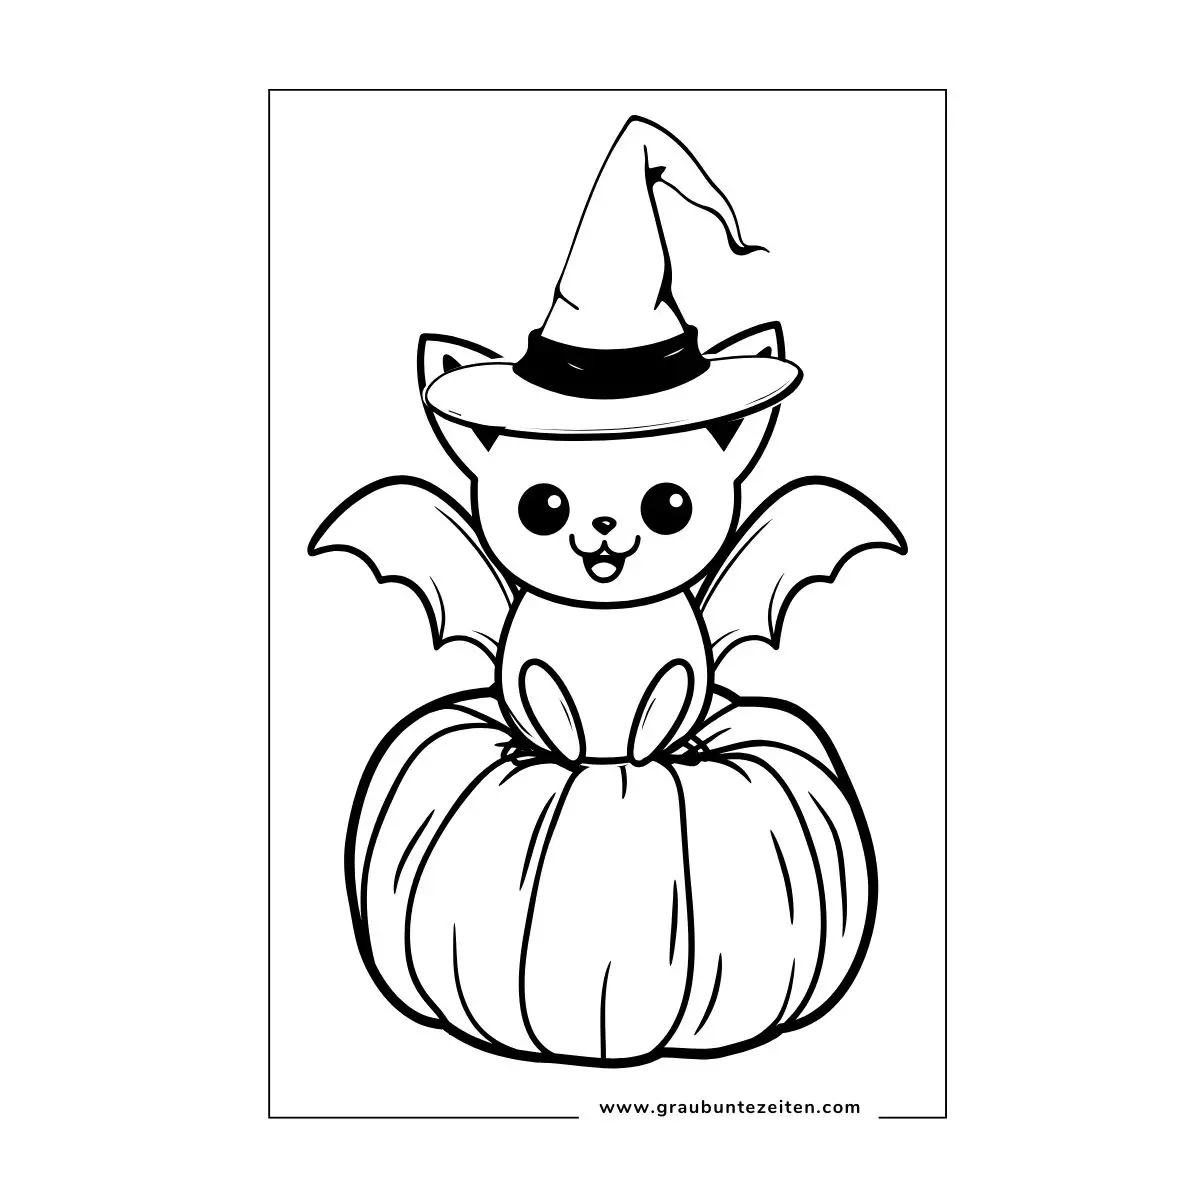 Ausmalbilder Halloween Fledermaus. Eine kleine Fledermaus sitzt im Halloween-Kostüm auf einem Kürbis.